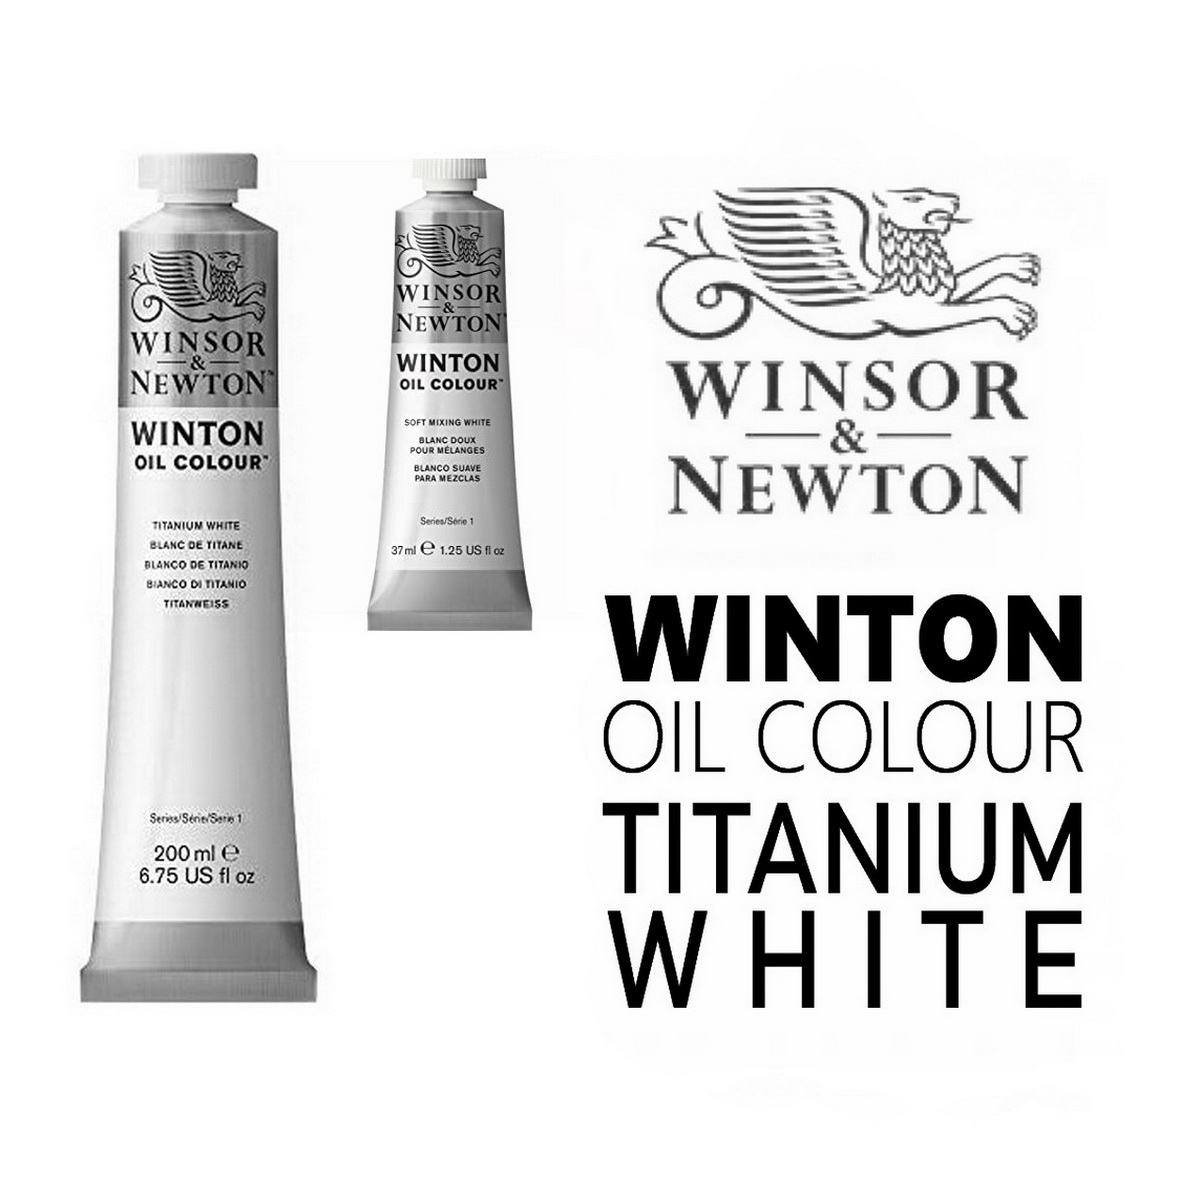 Winsor & Newton Winton 200ml Oil Colour - Titanium White